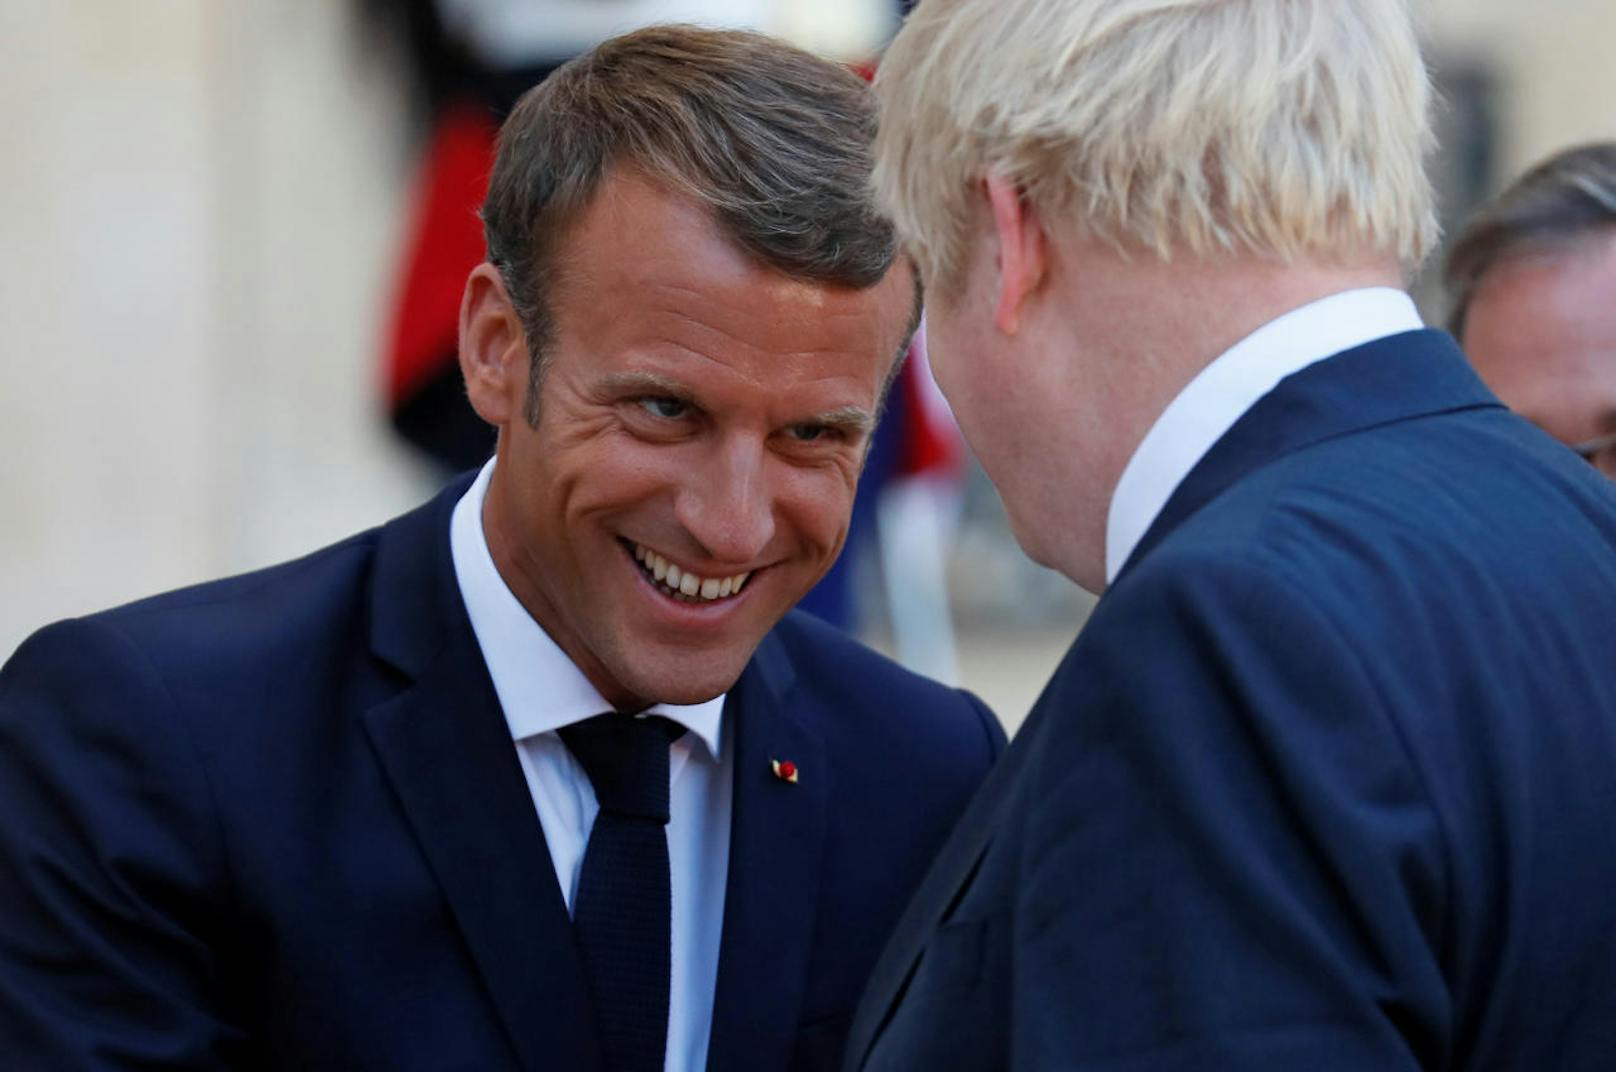 Macron, braun gebrannt nach einem zweiwöchigen Urlaub in Südfrankreich, machte dem blassen, blonden Briten keine Zugeständnisse.